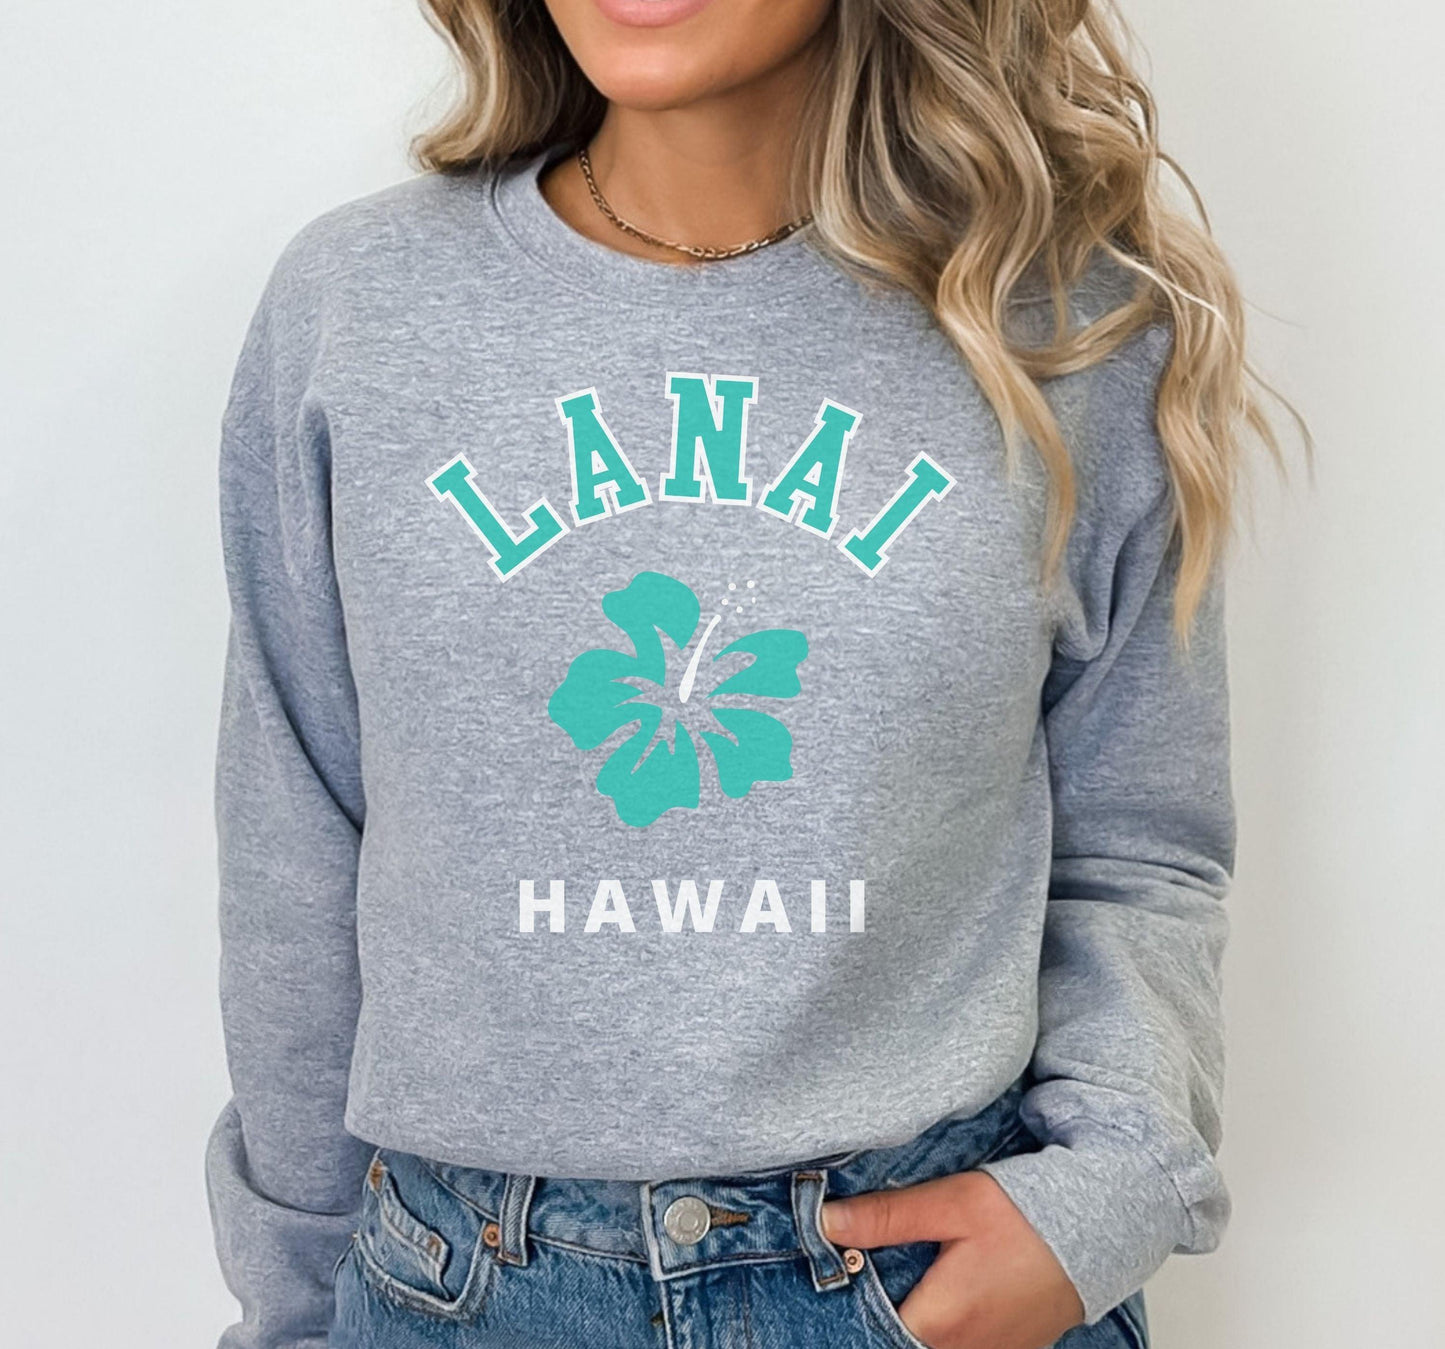 Lanai Island Hawaii Shirt - BentleyBlueCo